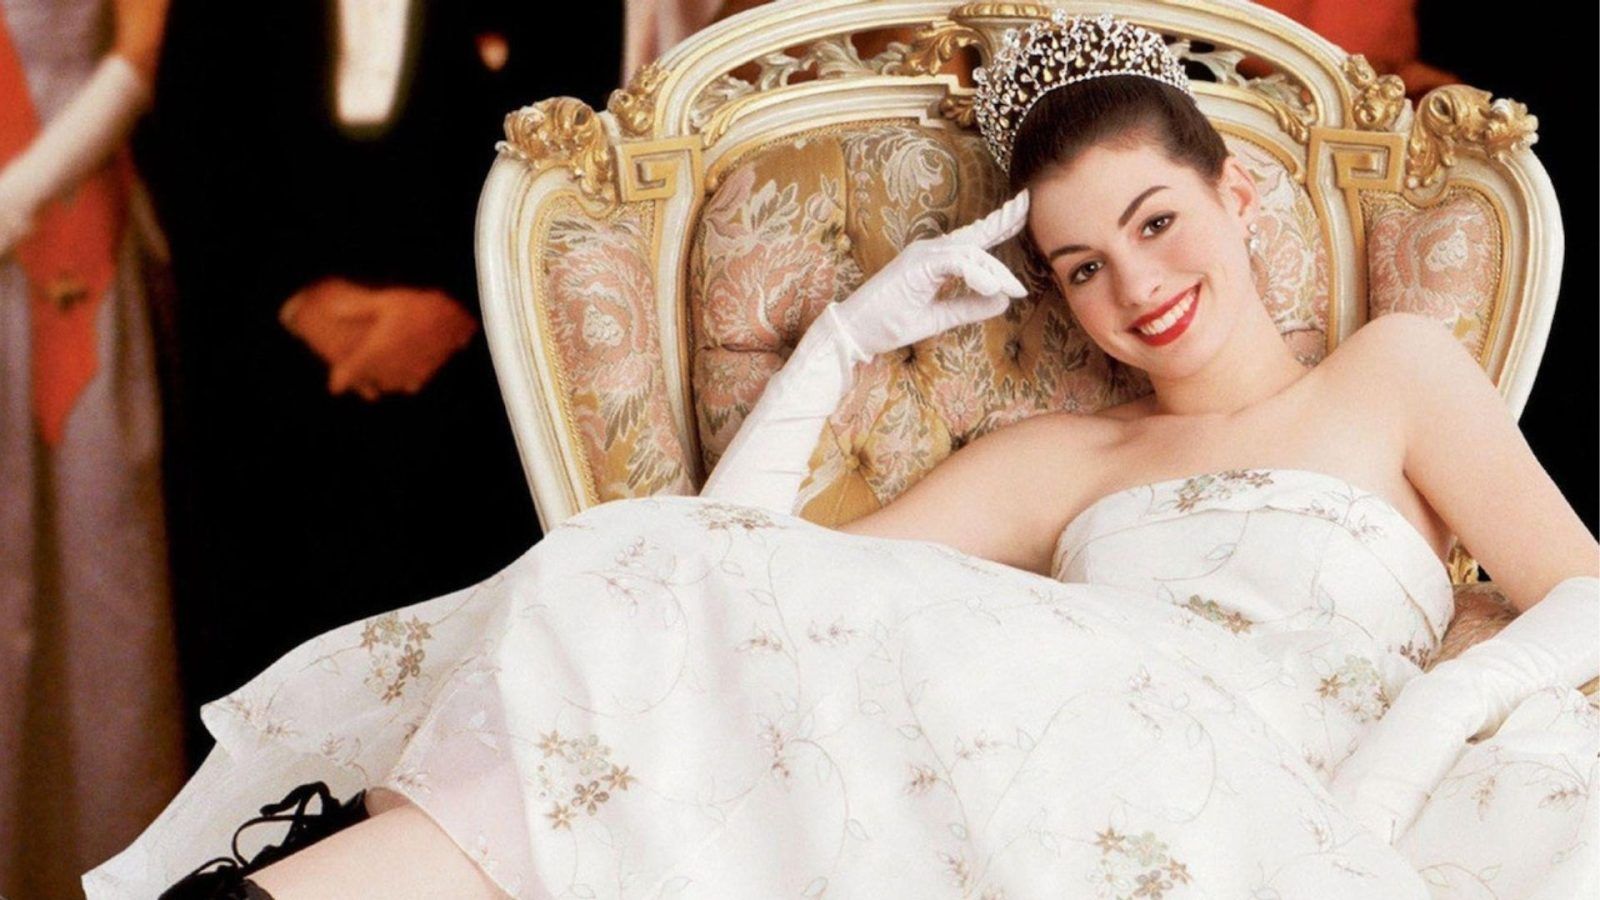 Princess Diaries 3 se reproduit – Anne Hathaway reviendra-t-elle ?